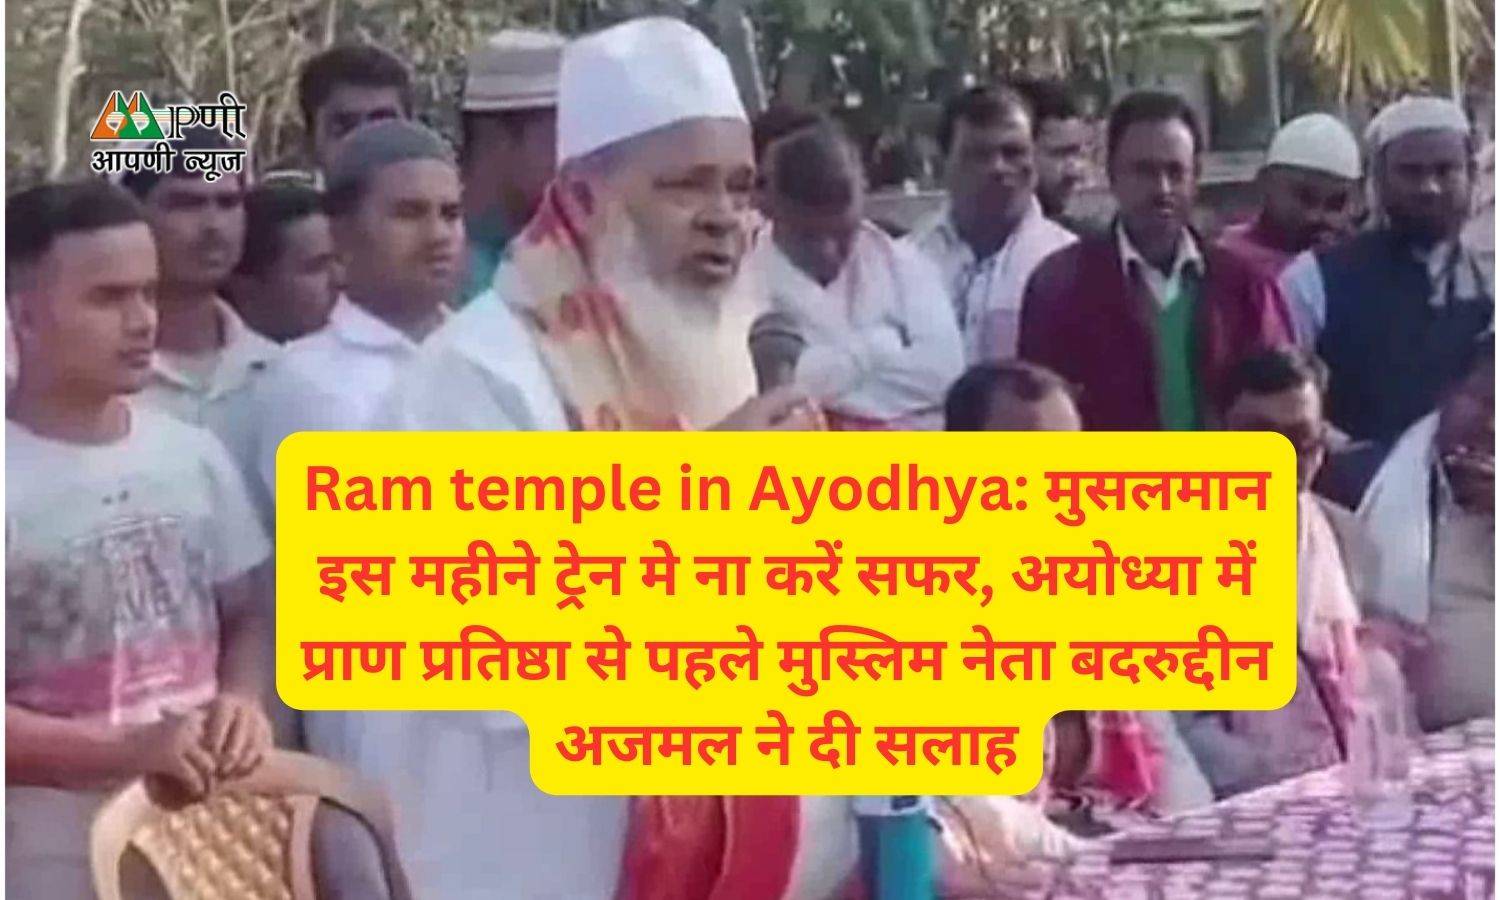 Ram temple in Ayodhya: मुसलमान इस महीने ट्रेन मे ना करें सफर, अयोध्या में प्राण प्रतिष्ठा से पहले मुस्लिम नेता बदरुद्दीन अजमल ने दी सलाह